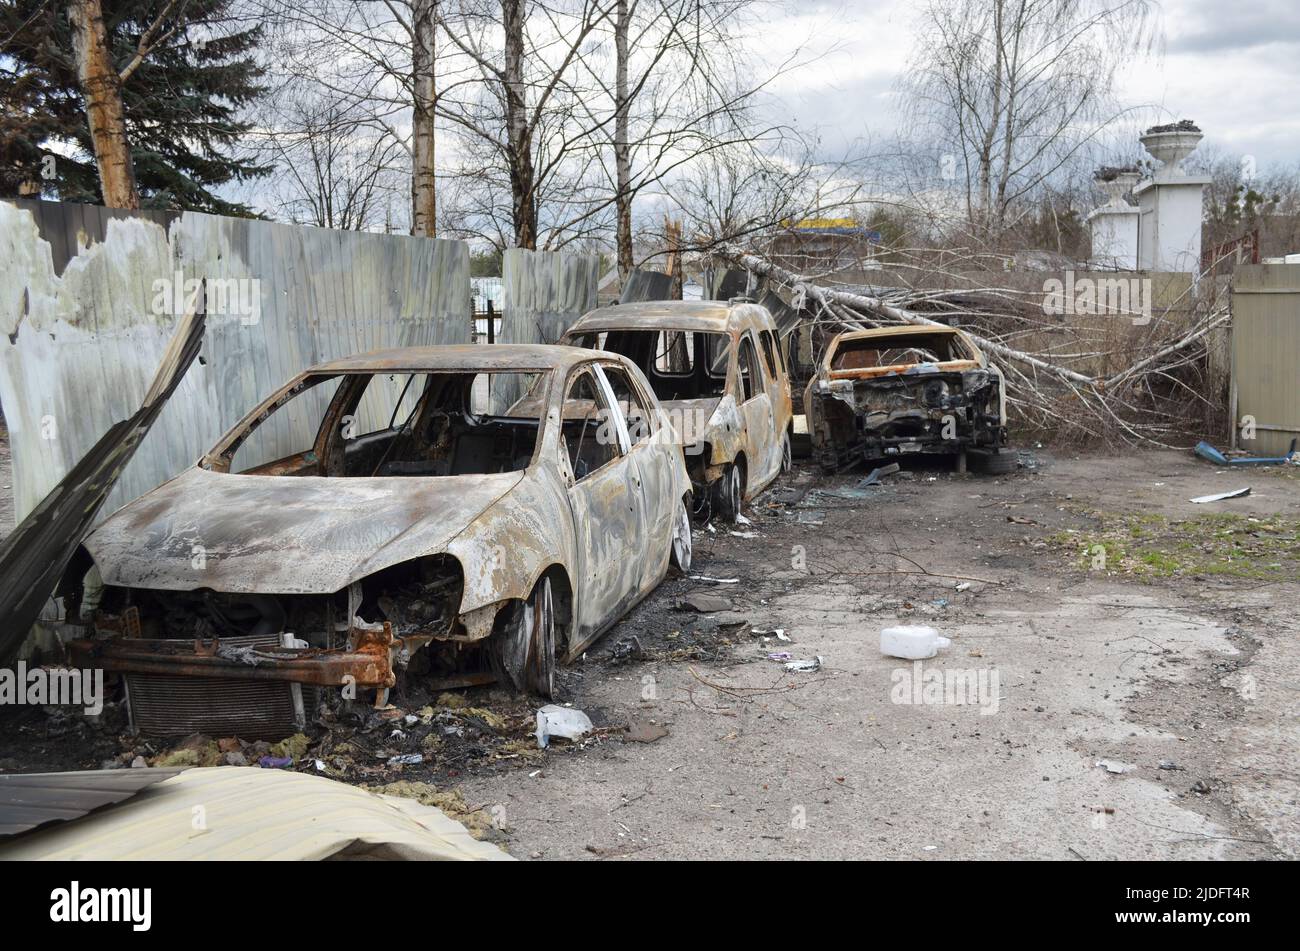 Mriya, regione di Kyiv, Ucraina - Apr 11, 2022: Auto civili bruciate e rotte nella regione di Kiev durante l'invasione russa dell'Ucraina. Foto Stock